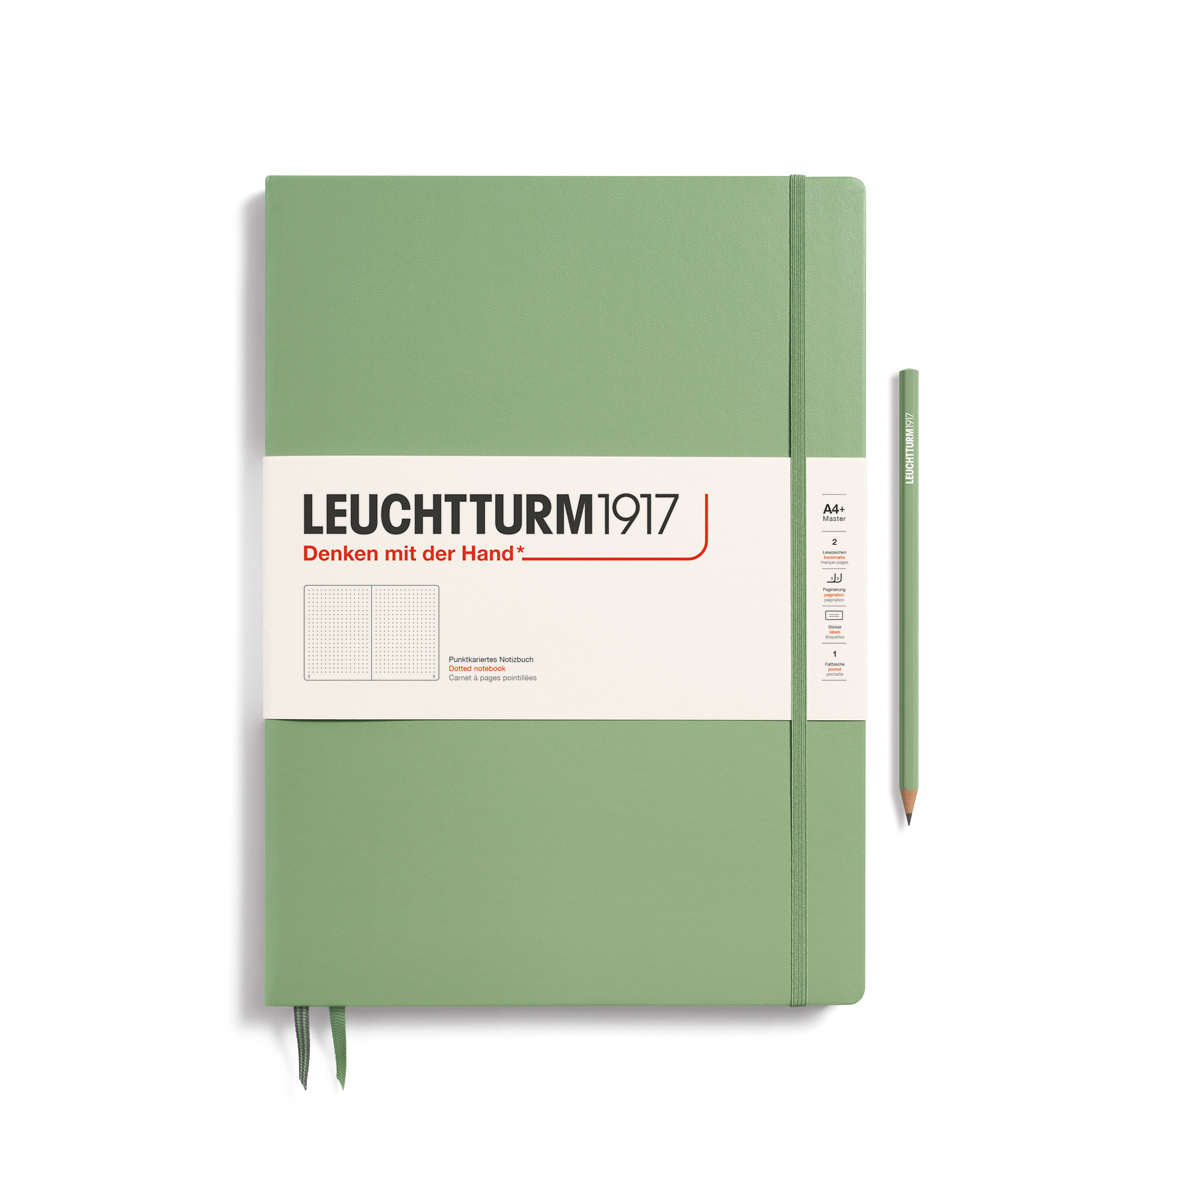 Записная книжка в точку Leuchtturm Master Slim А4+ 123 стр., твердая обложка пастельный зеленый записная книжка синтетическая бумага серебряная 120 листов а5